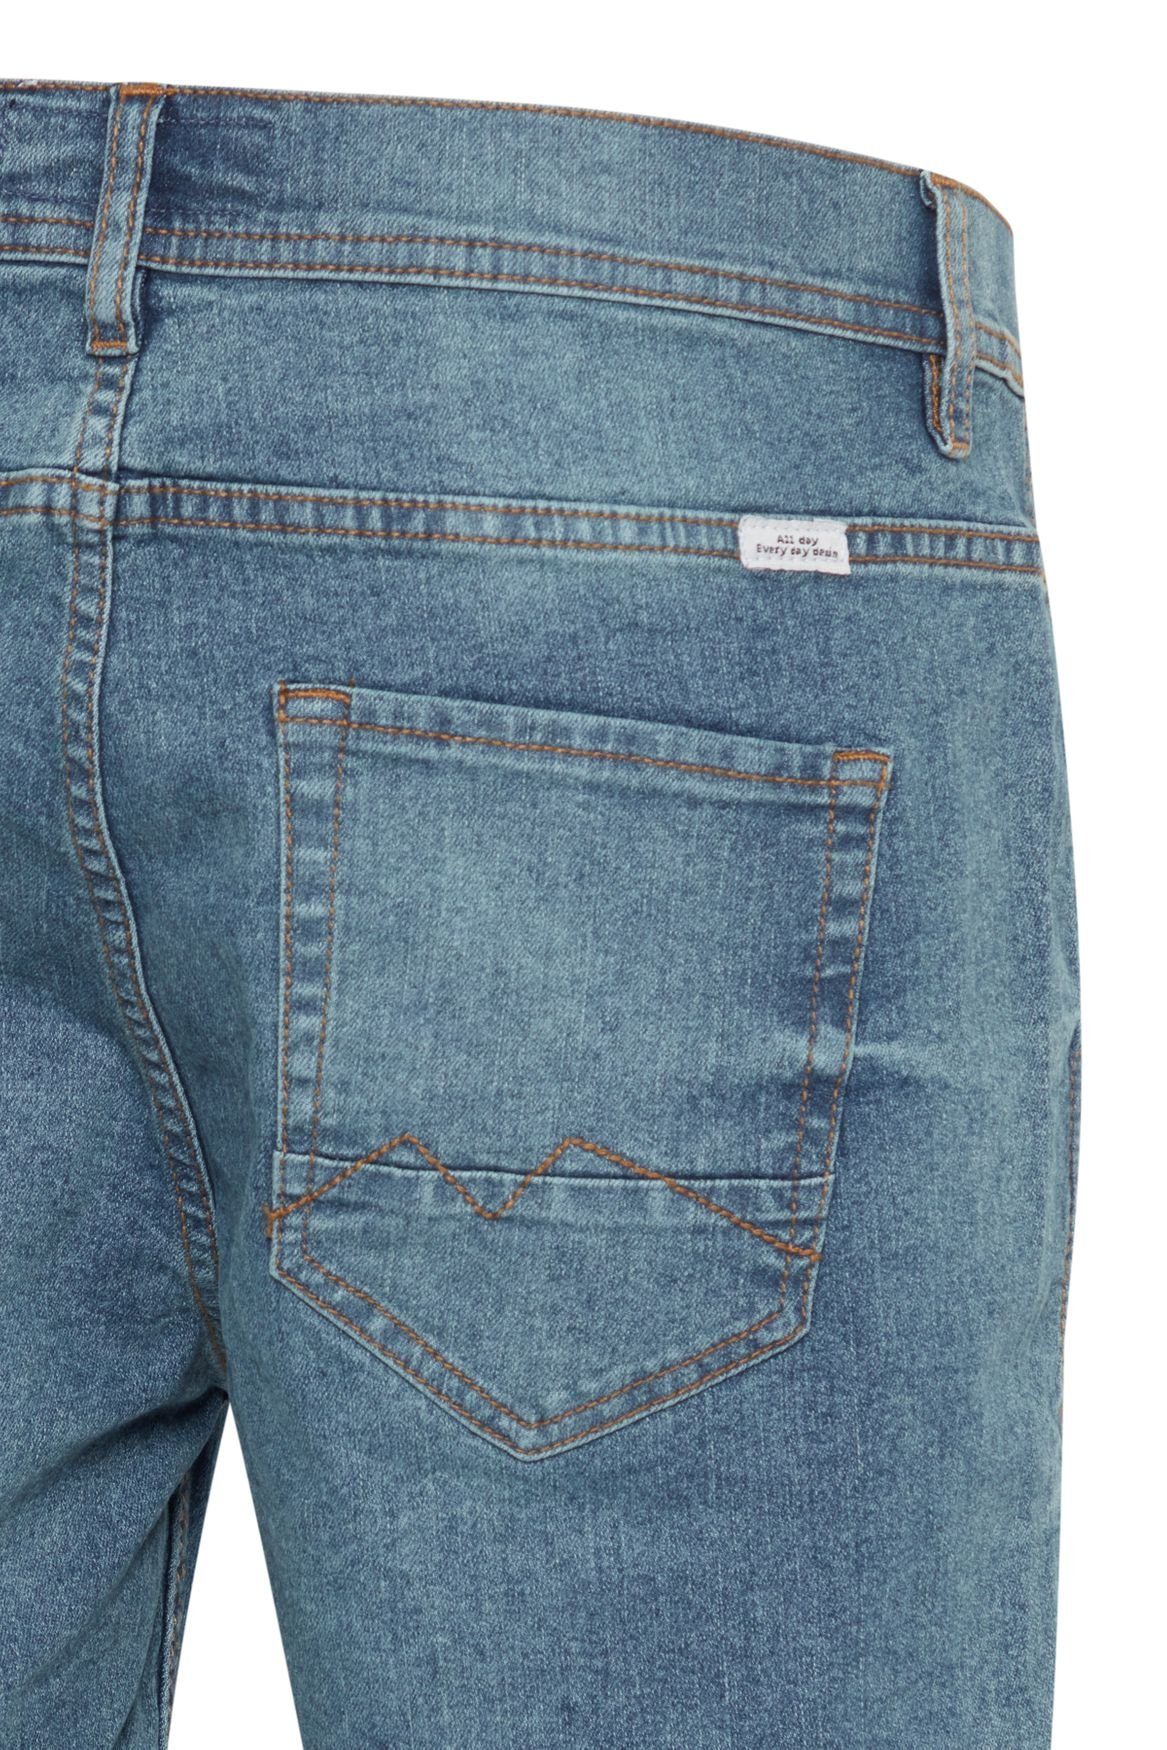 Jeansshorts Shorts in 3/4 Hose Bermuda Denim Blau 5087 Jeans Blend Capri